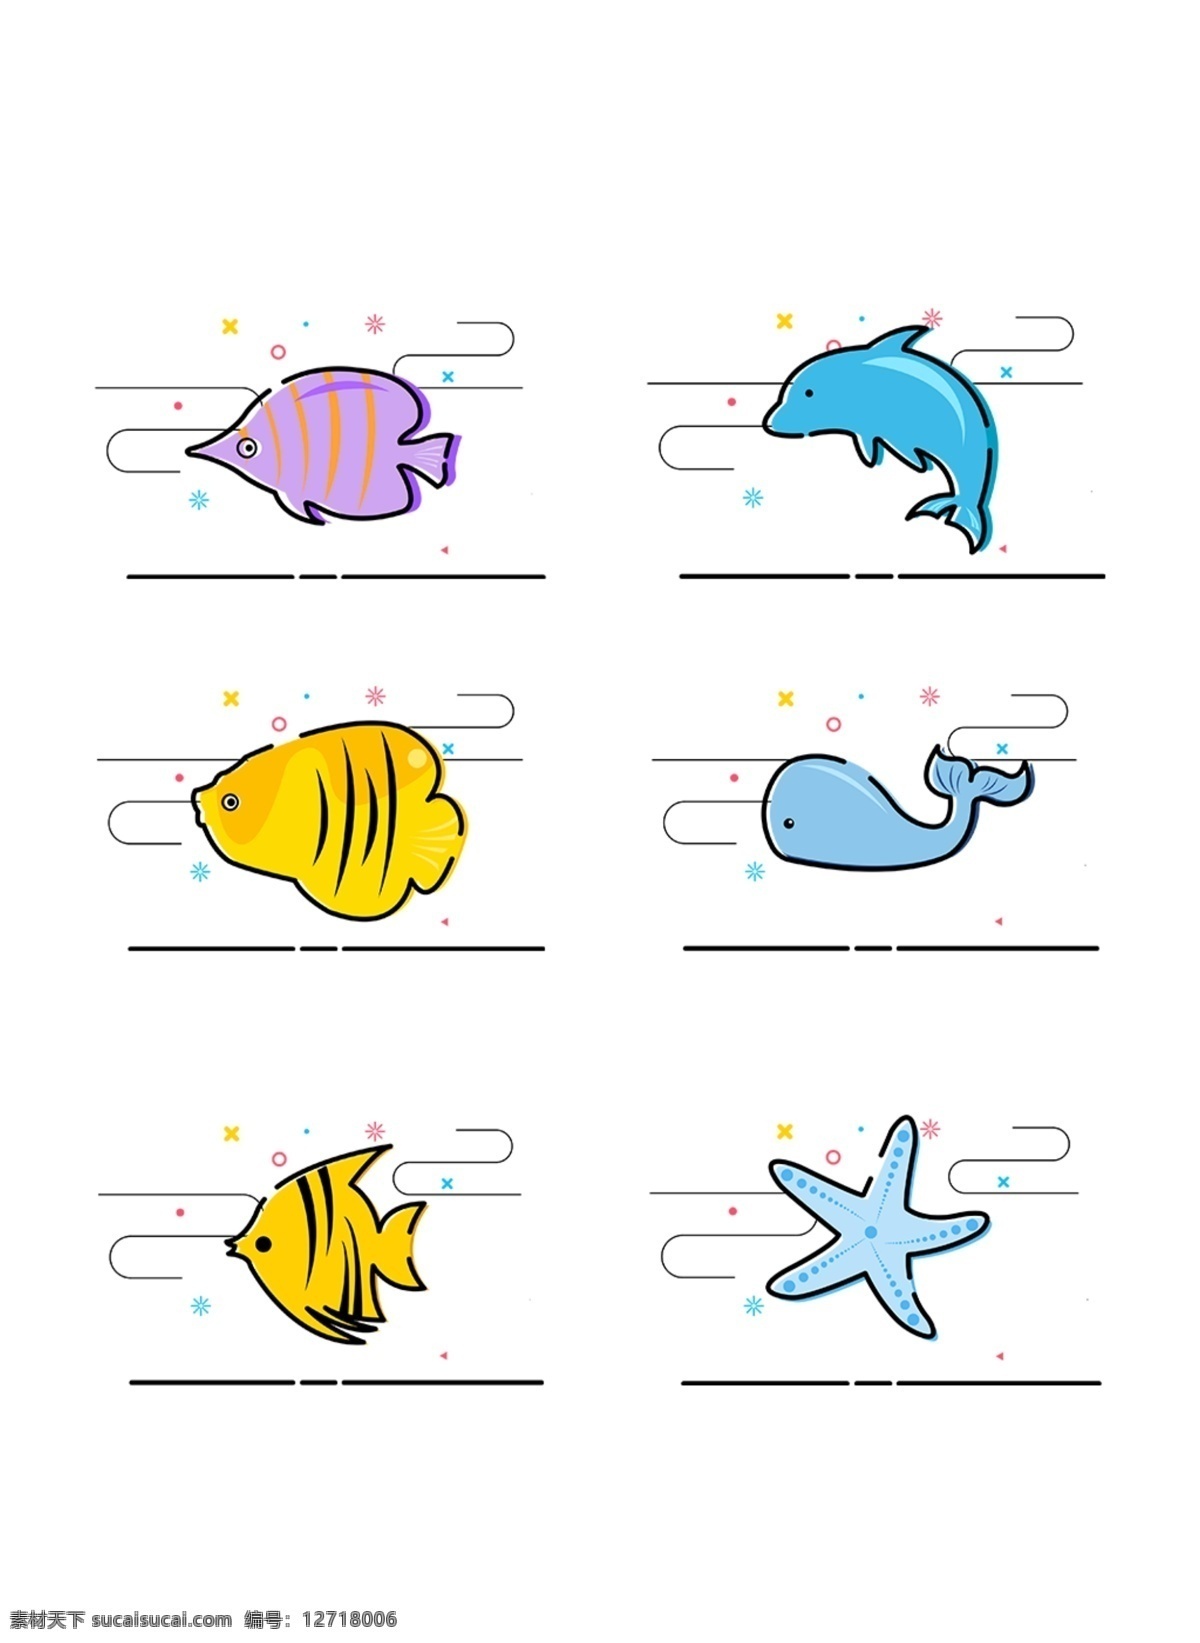 mbe 风格 海洋生物 装饰 图案 组合 商用 元素 插画 图标 海星 海豚 mbe风格 装饰图案 热带鱼 鲸鱼 可商用